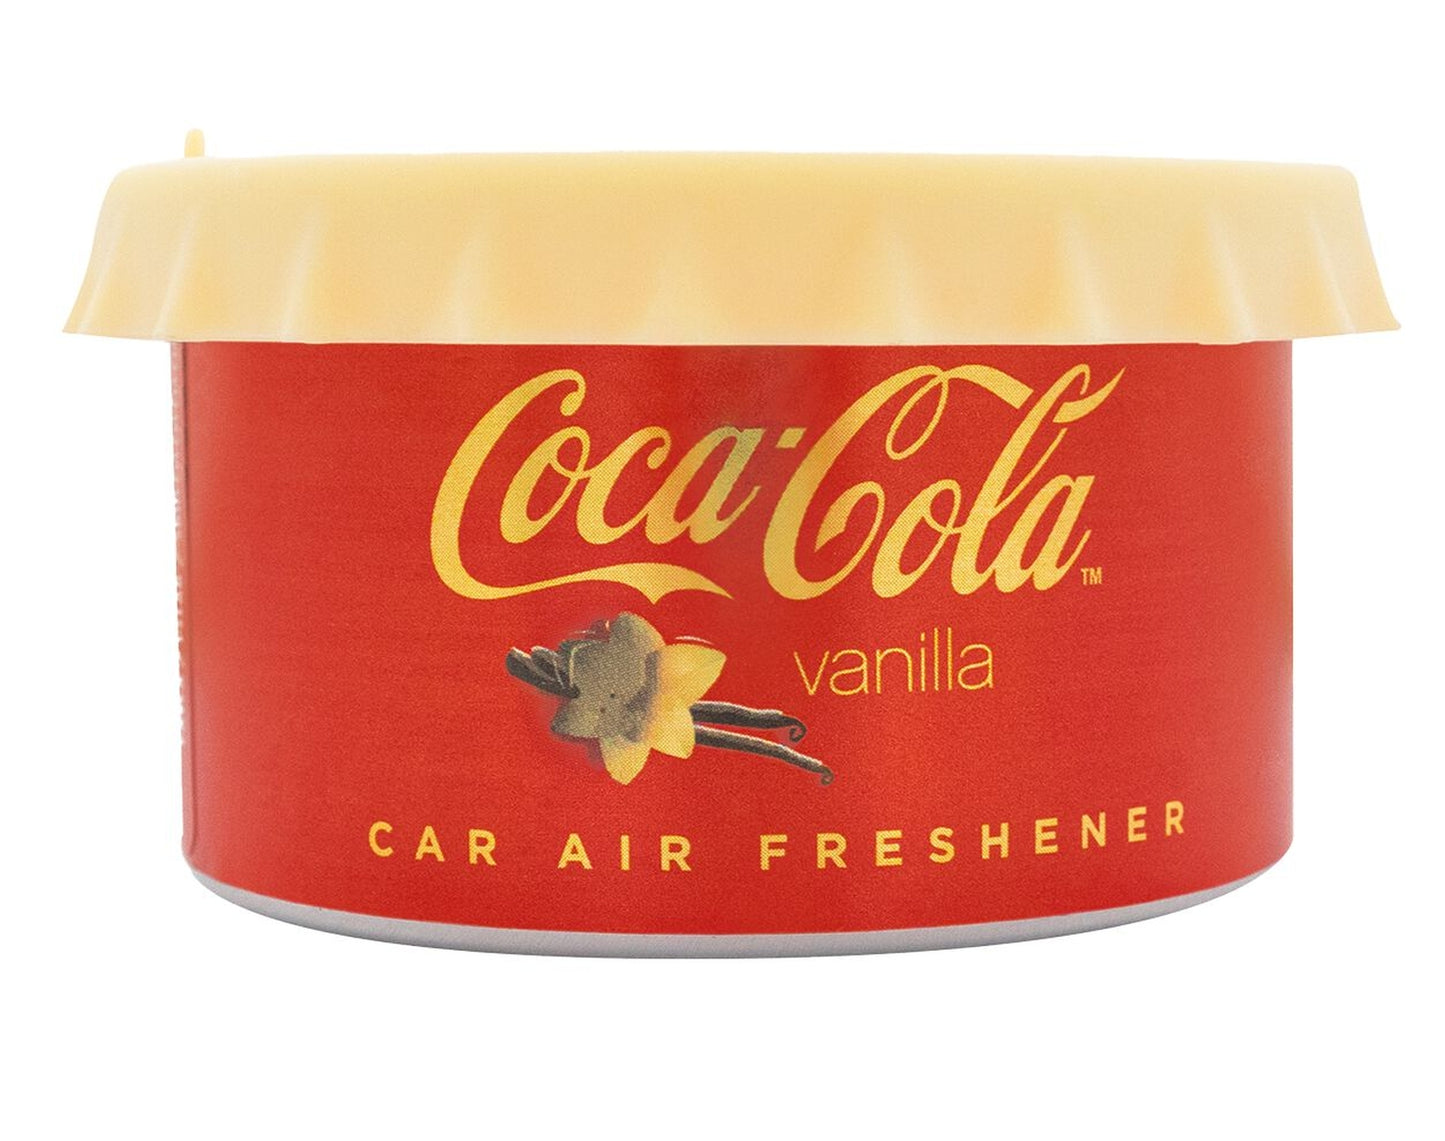 Airpure Duftdose Coca-Cola, Vanilla